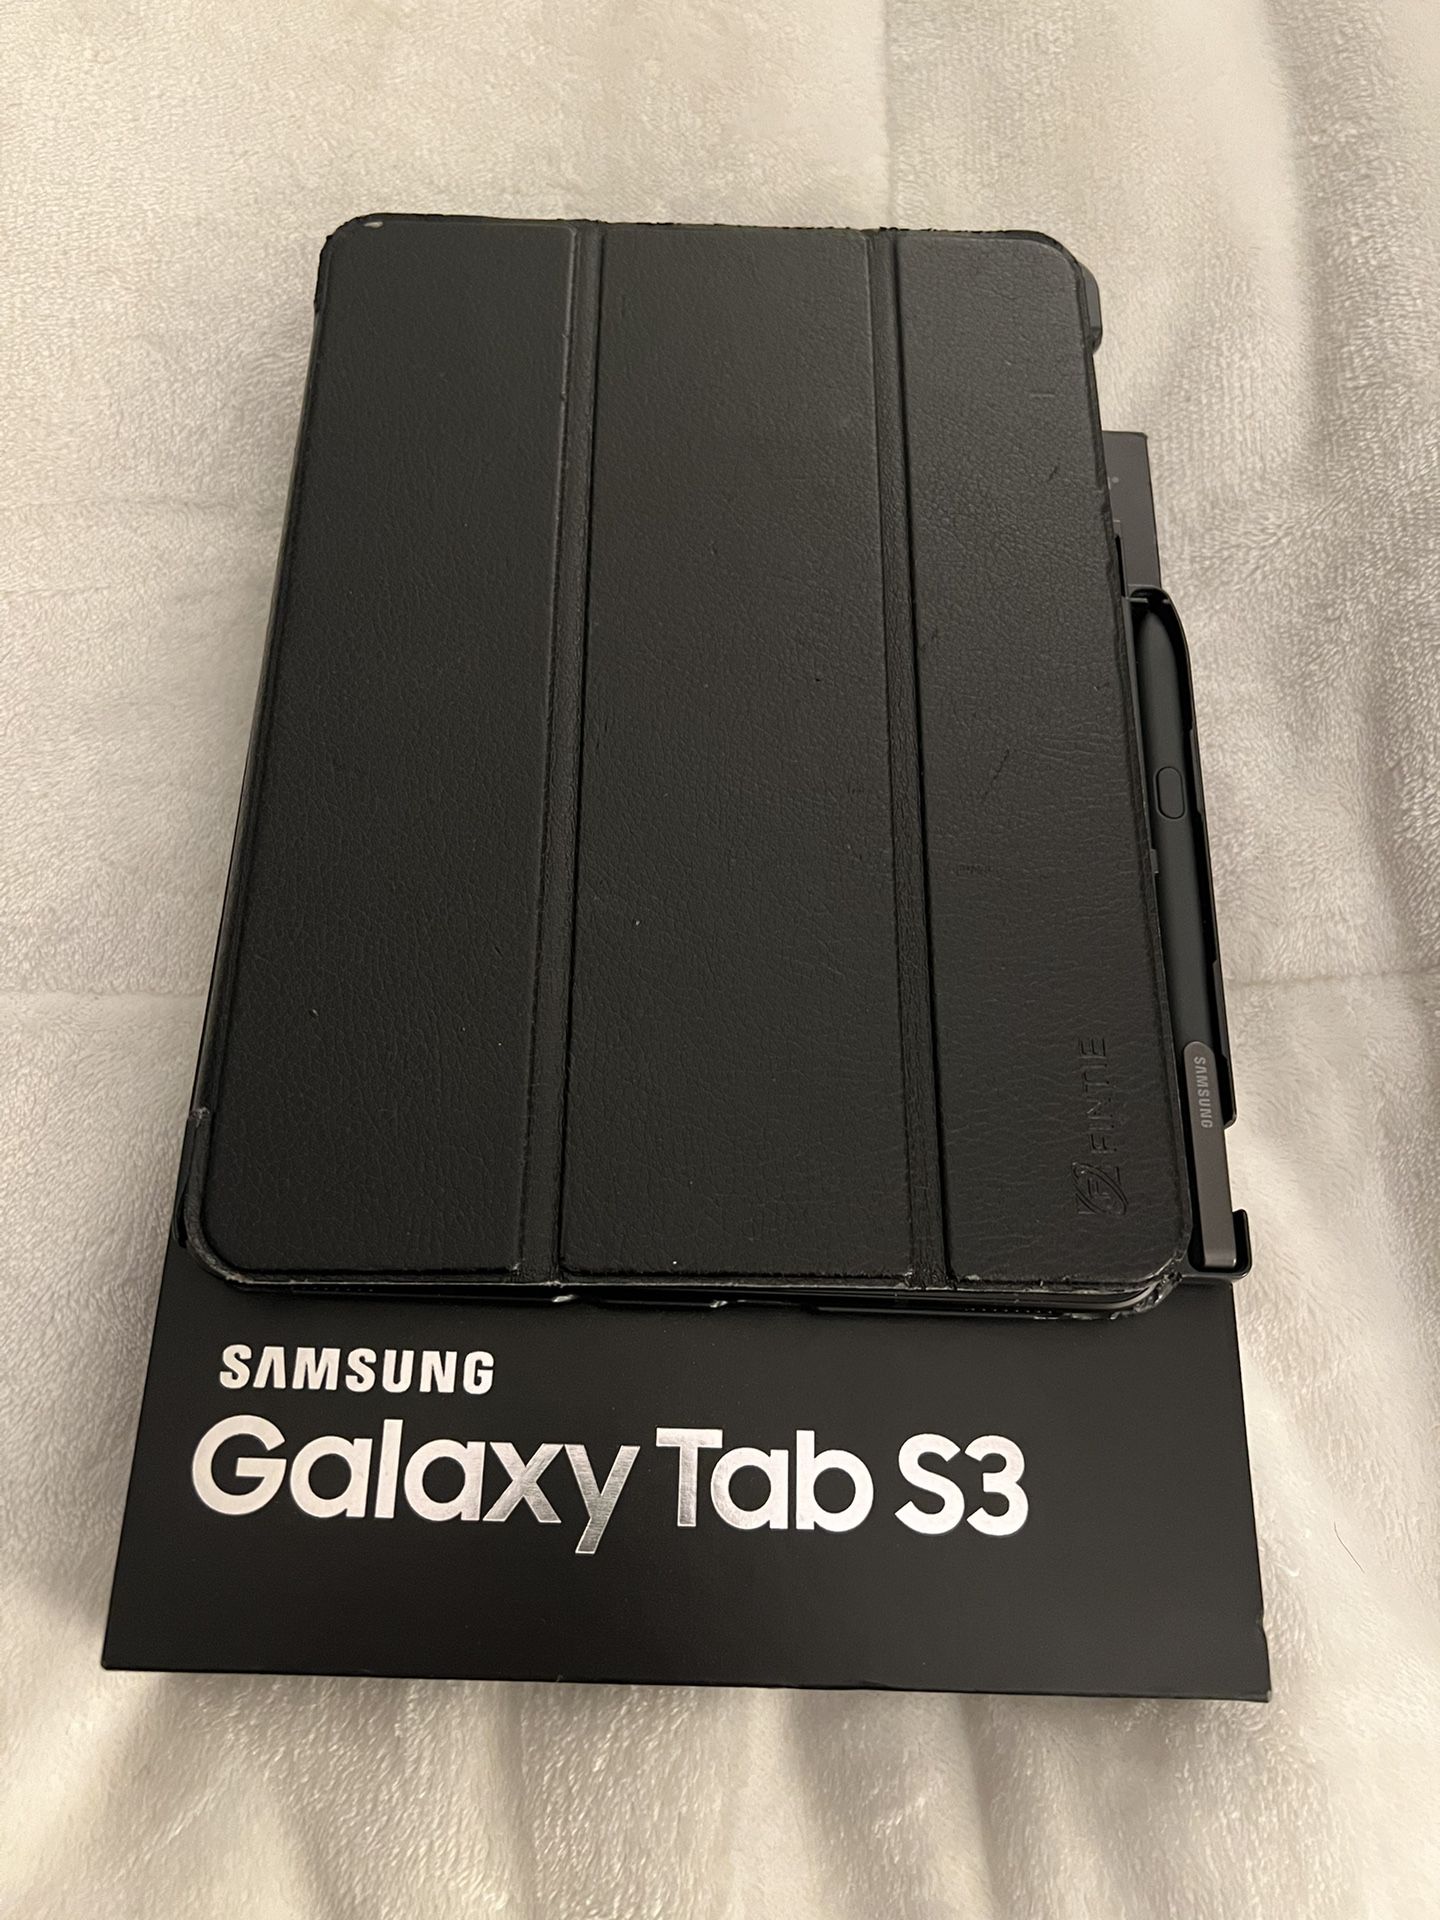 Samsung Tablet - Galaxy Tab S3 